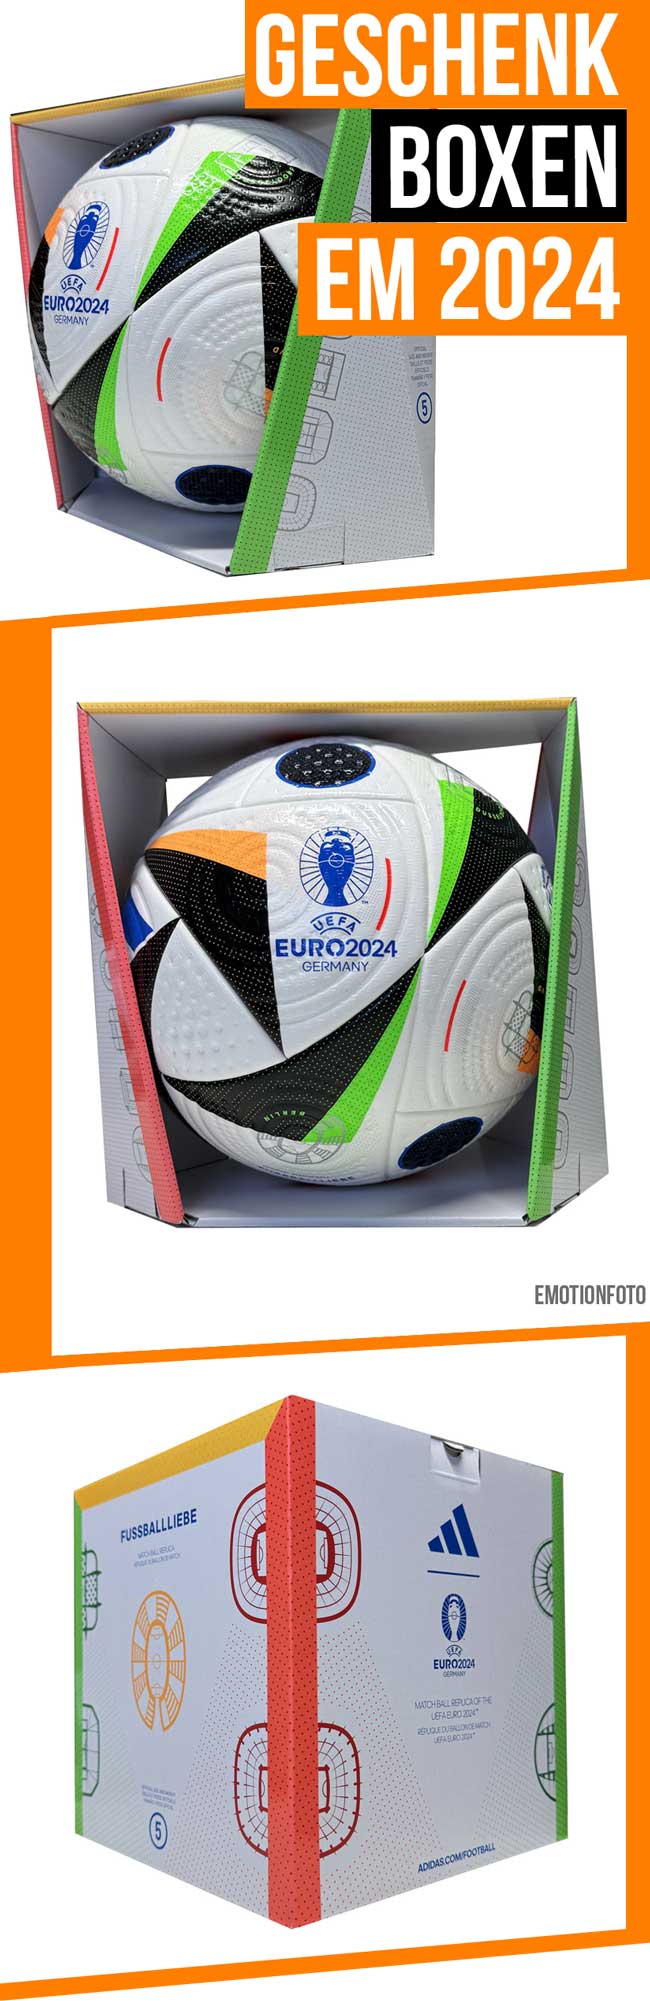 Hol dir jetzt die sportliche Geschenk Box und sicher dir einen der neuen Fußbälle für die Euro 2024